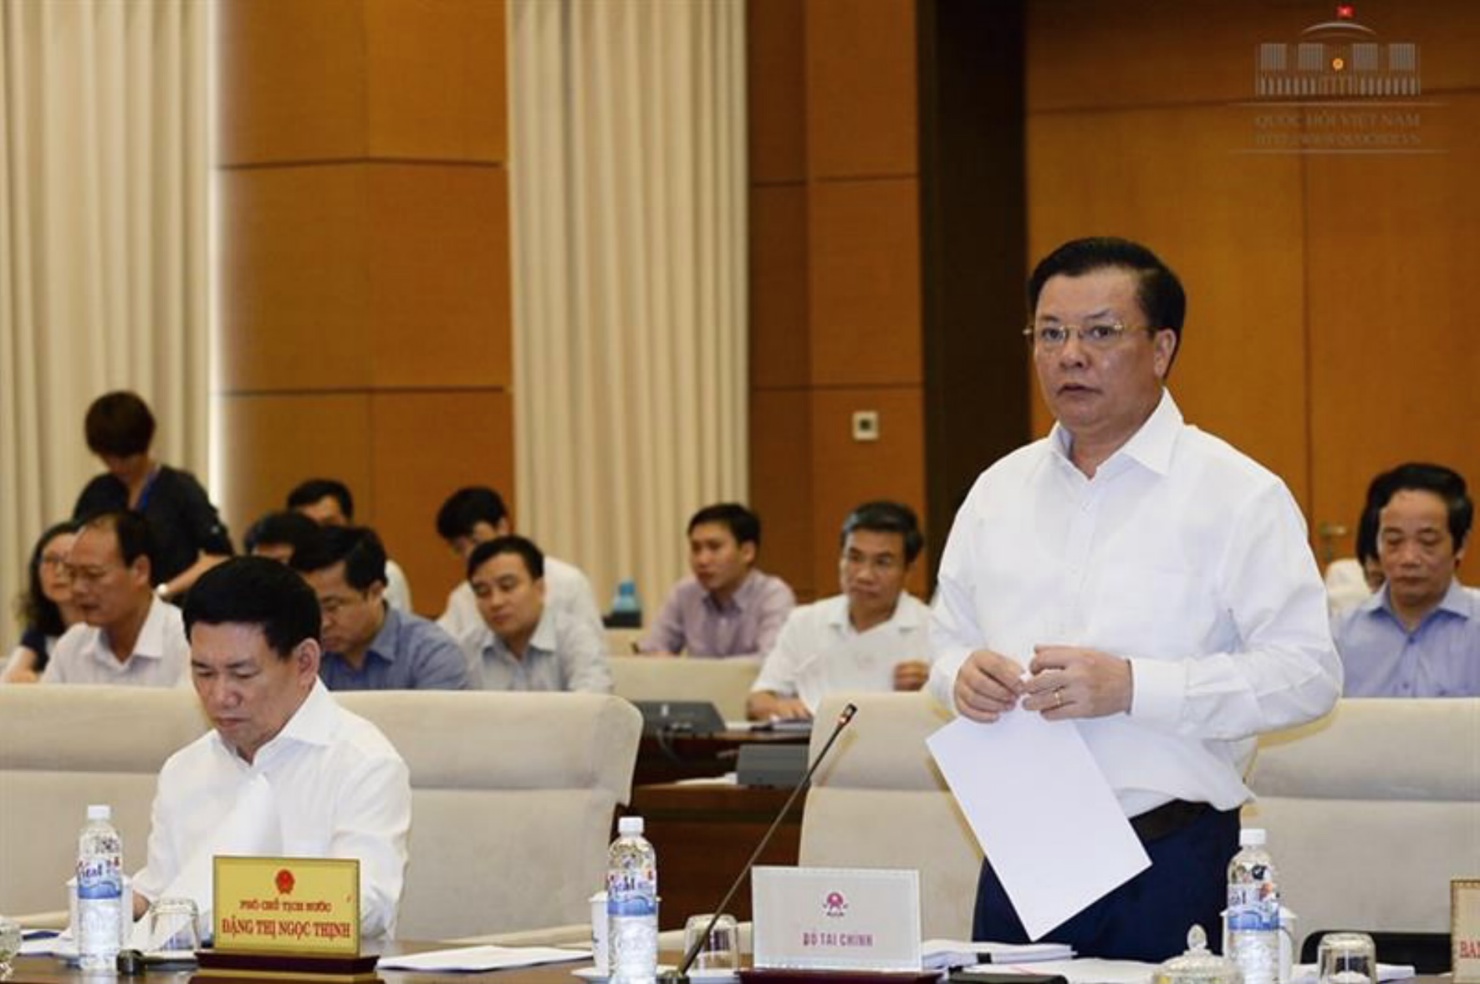 Bộ trưởng Bộ Tài chính Đinh Tiến Dũng trình bày báo cáo tại phiên họp Ủy ban Thường vụ Quốc hội chiều 19/4.